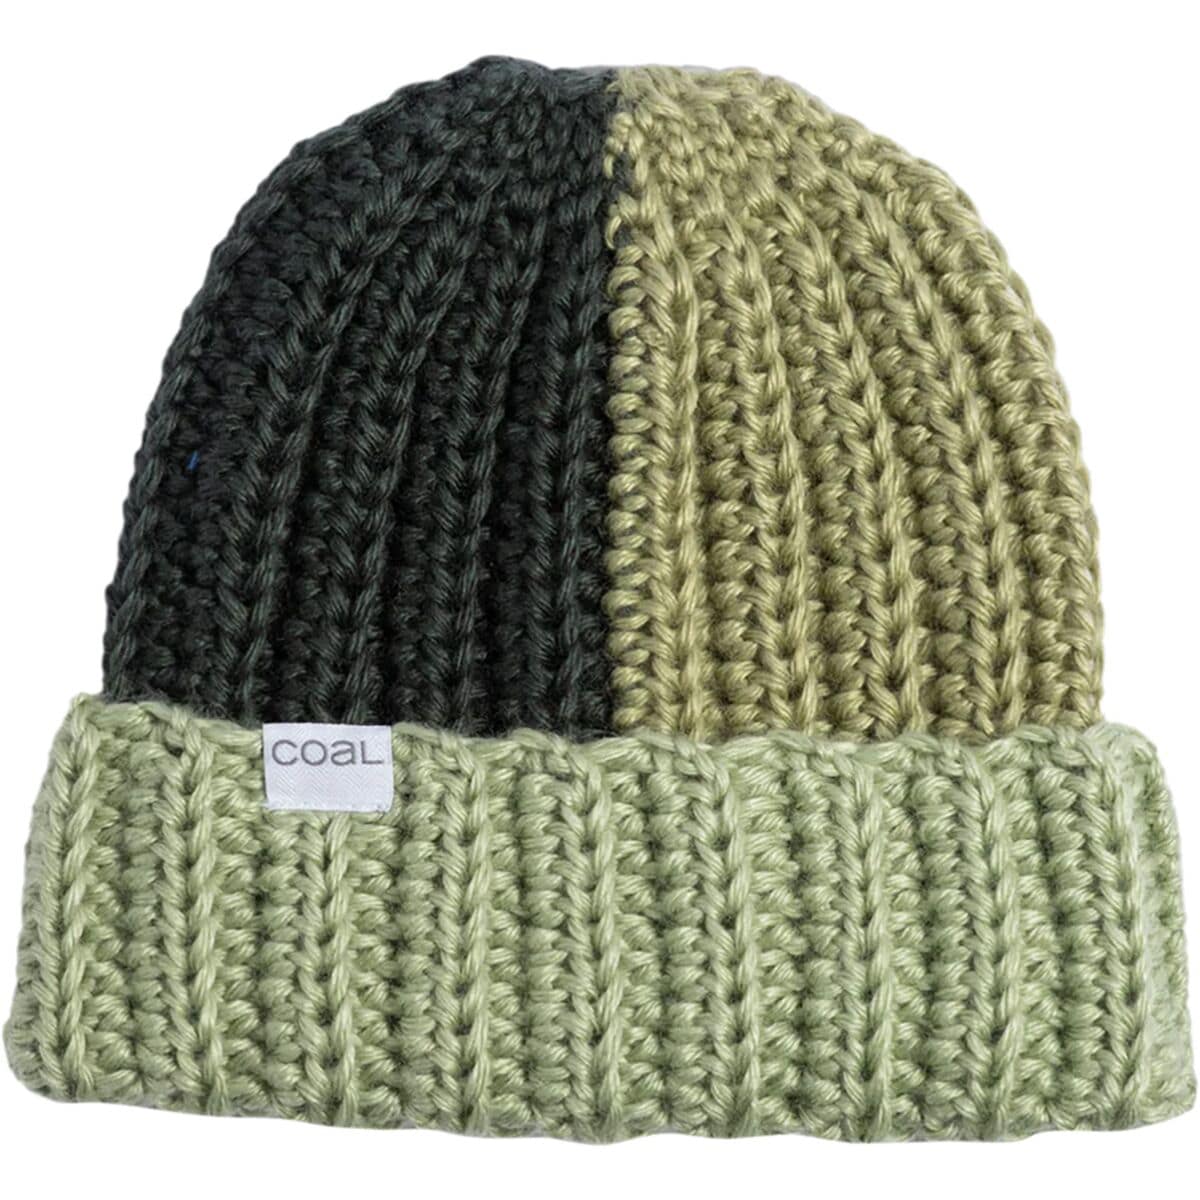 аналоговая шляпа coal headwear цвет fuchsia Наима шапка-бини Coal Headwear, цвет cucumber